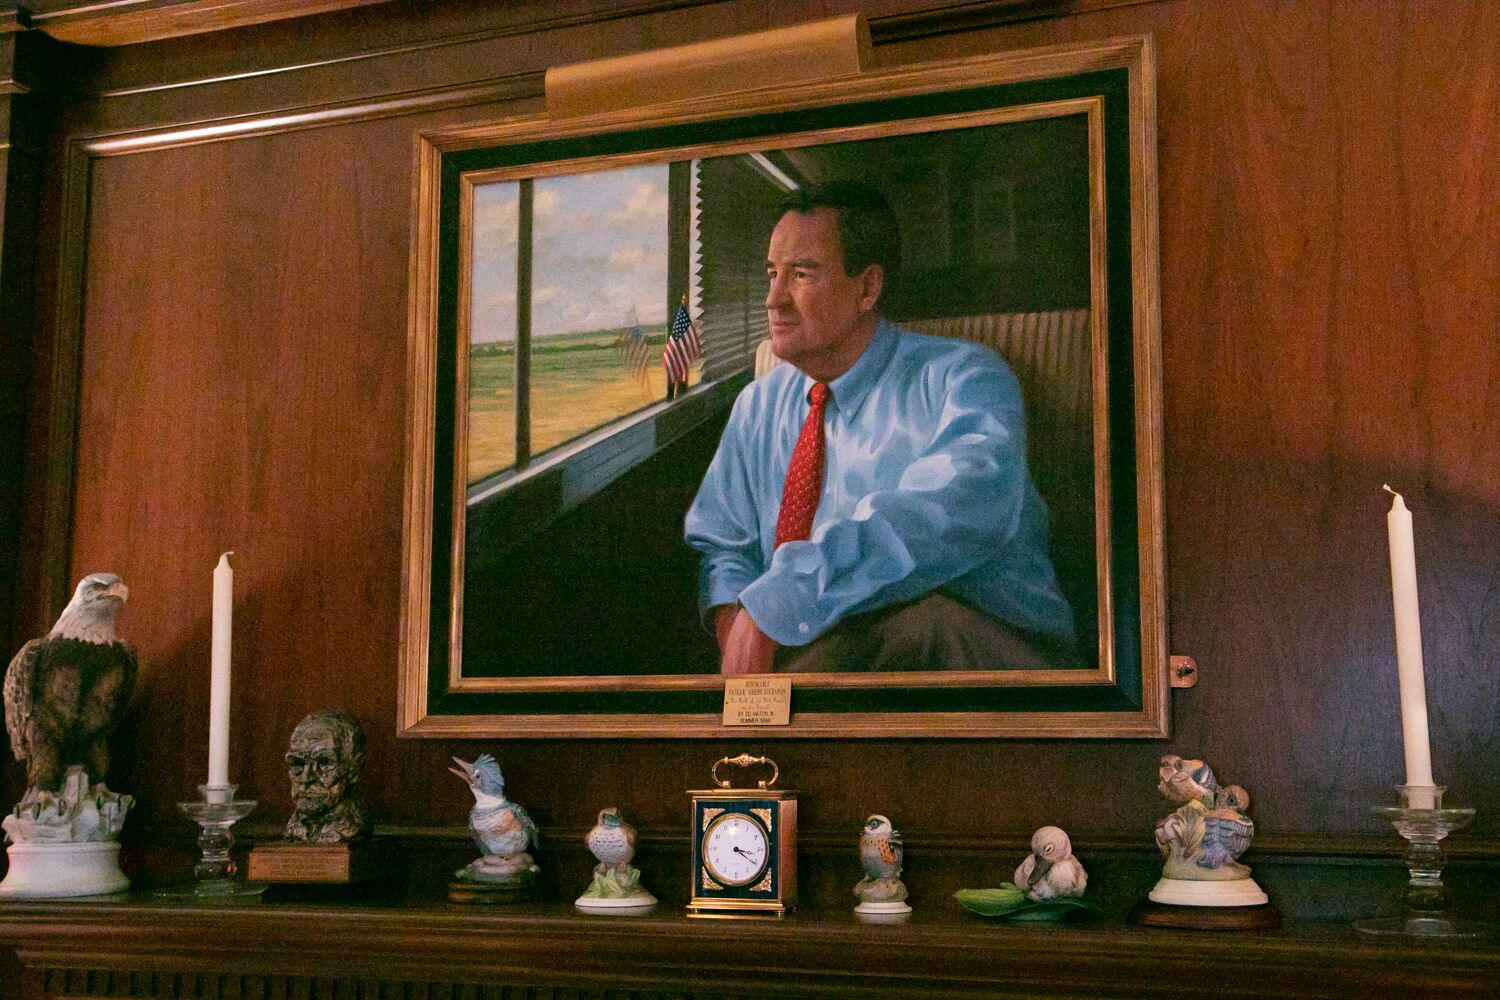 写真・図版 : パット・ブキャナン氏の自宅に飾られた自身の肖像画。1992年大統領選の共和党のアイオワ州党員集会の際、バスに乗って選挙キャンペーンをしている姿が描かれている＝ランハム裕子撮影